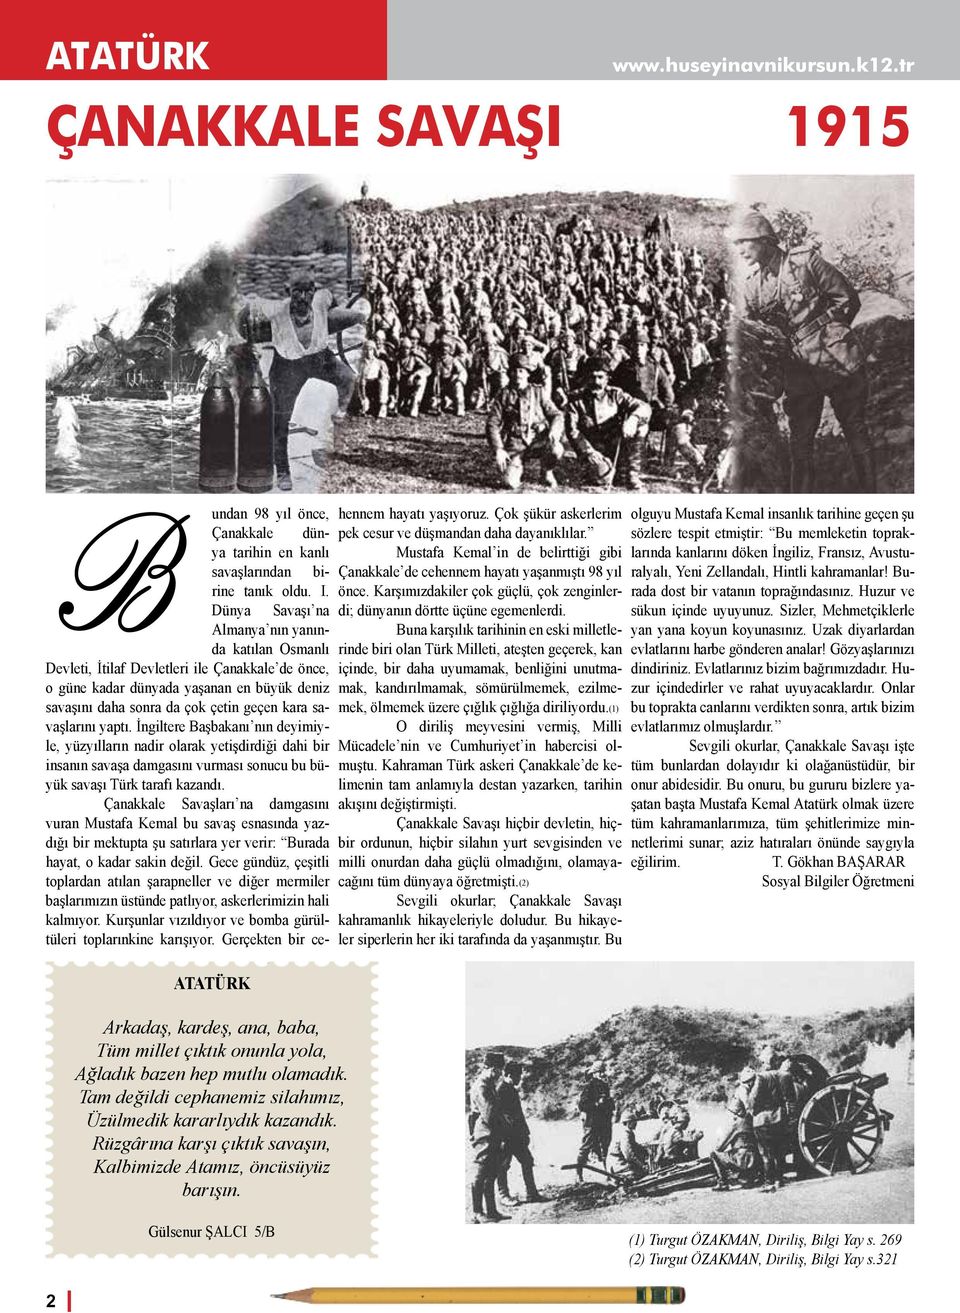 B undan 98 yıl önce, Çanakkale dünya tarihin en kanlı savaşlarından birine tanık oldu. I.